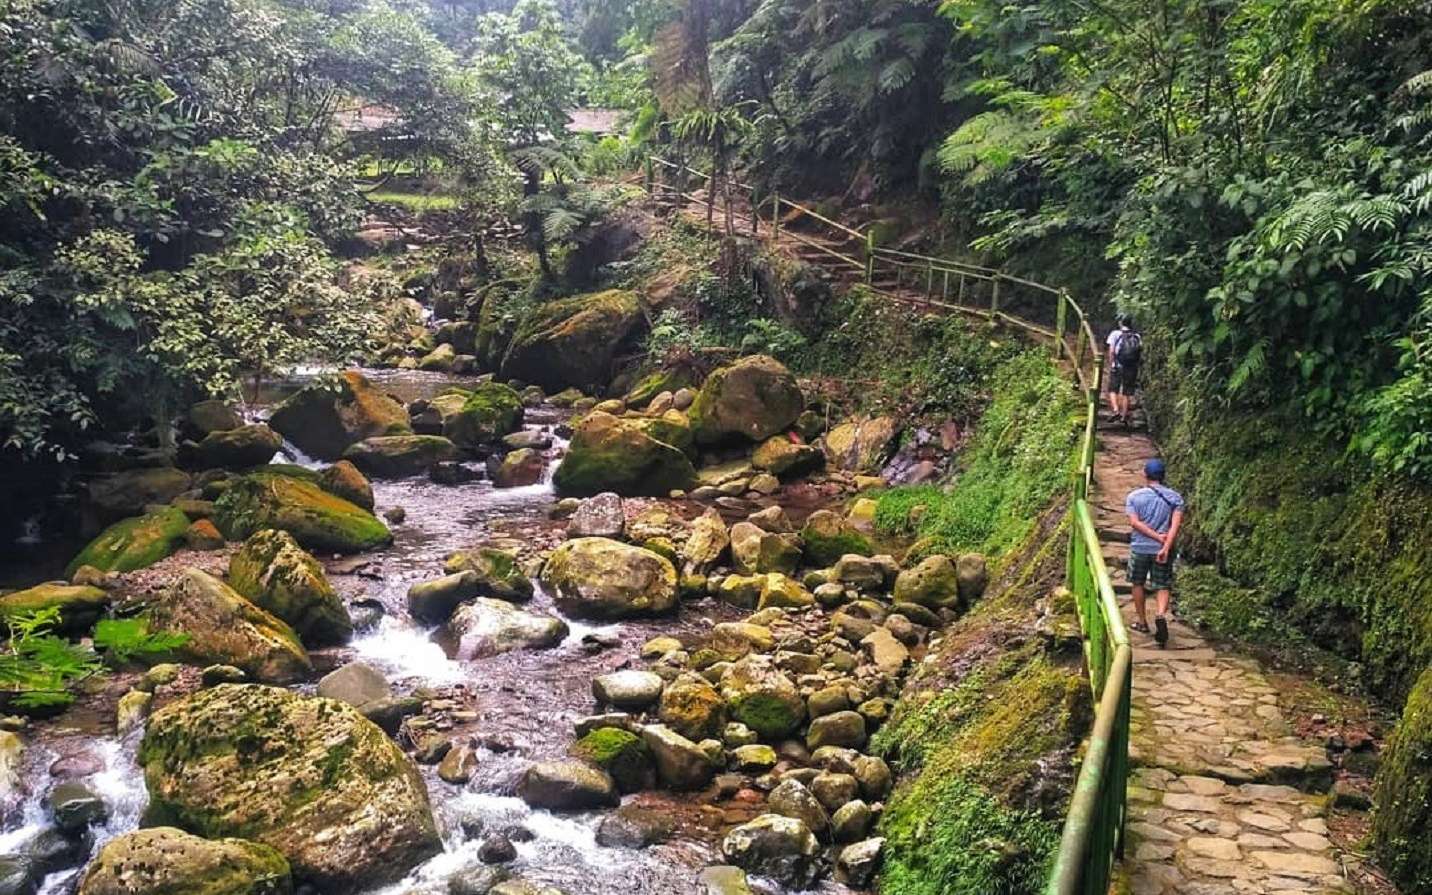 Jalur treking berupa tangga bebatuan dengan pemandangan pepohonan rimbun dan tepian sungai